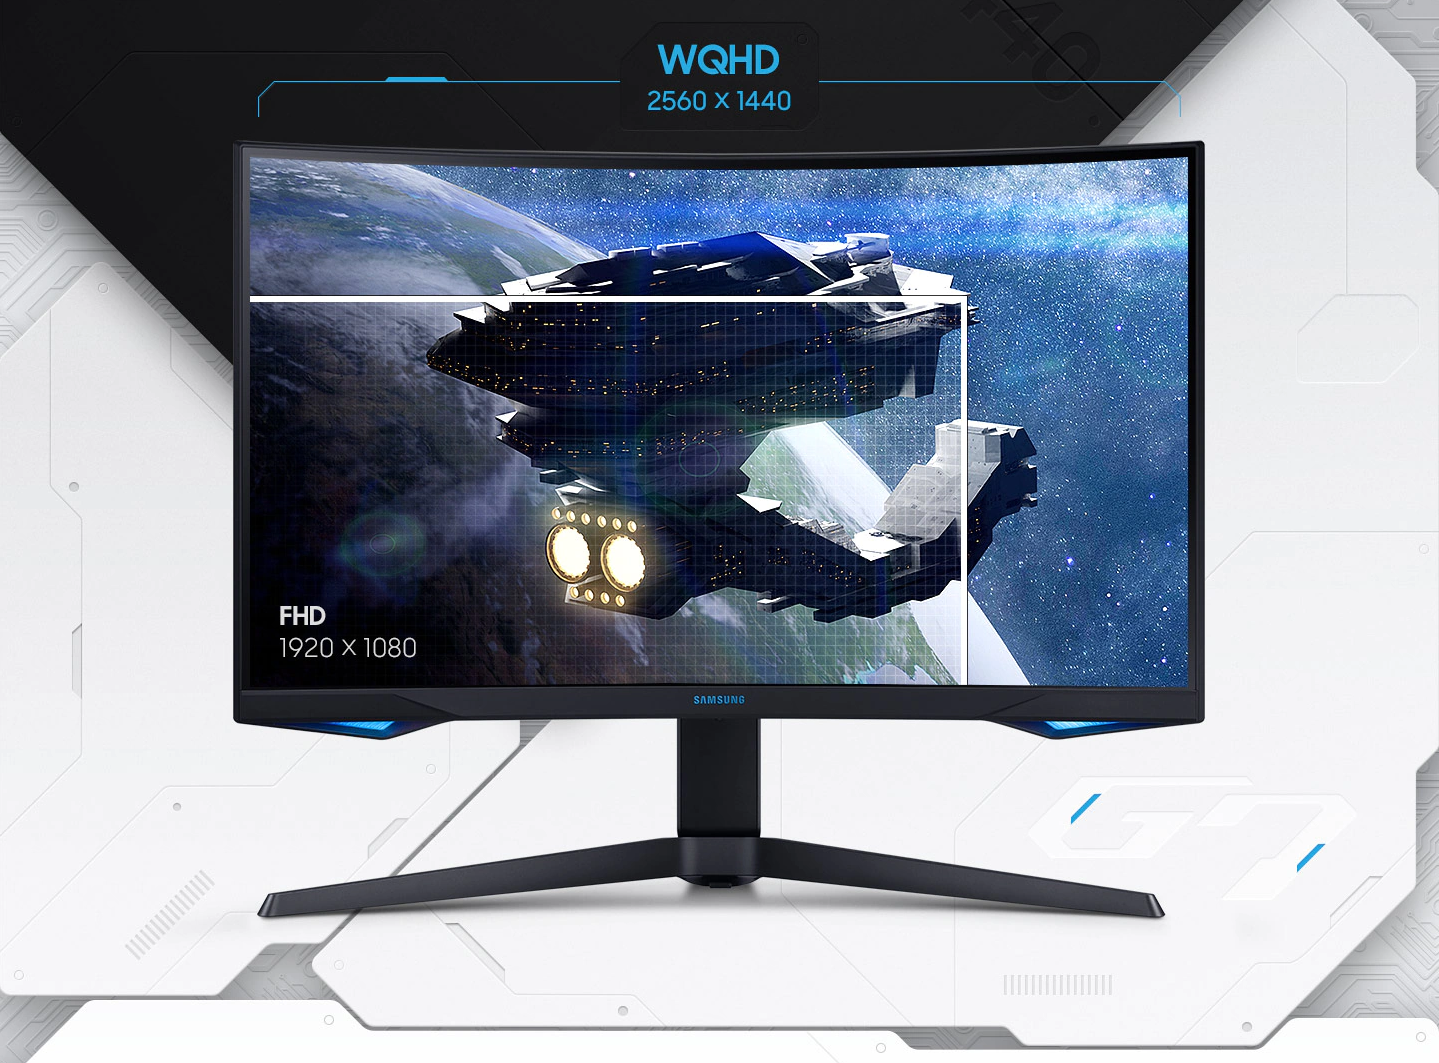 Monitor Odyssey G7 je vybavený zakřiveným SVA panelem od Samsungu, který nabízí jemné QHD rozlišení 2560 x 1440 px.